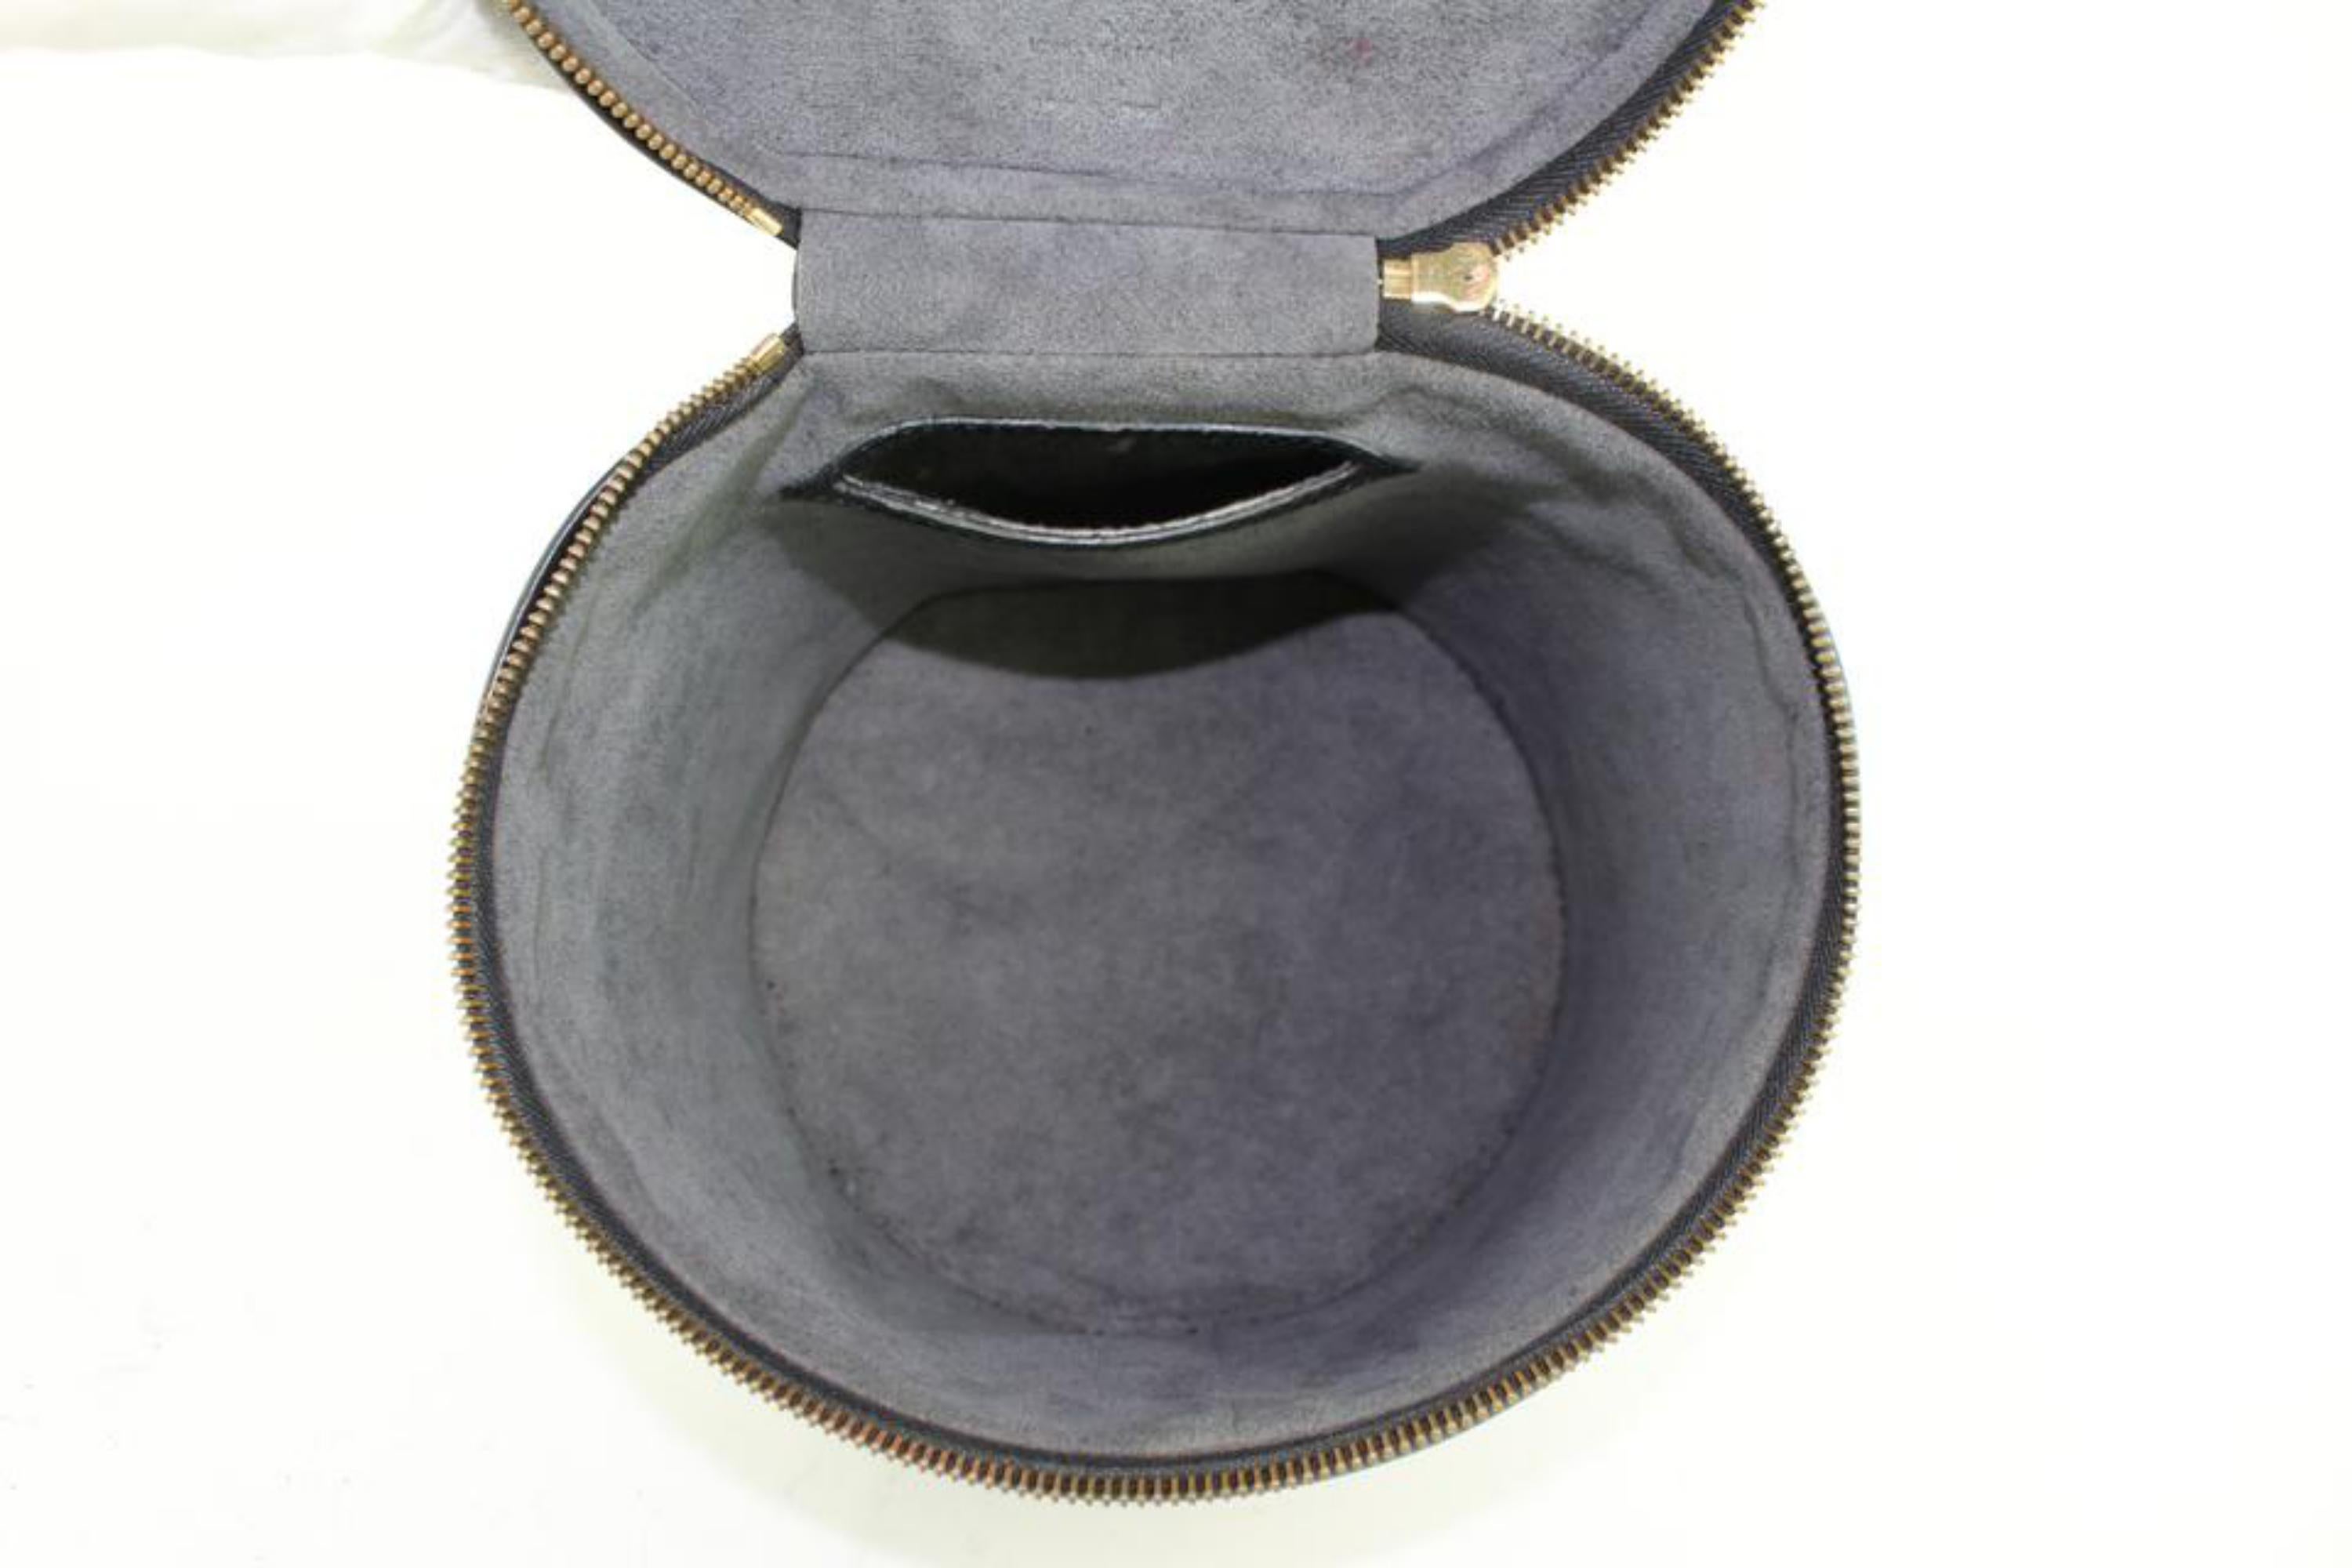 Women's Louis Vuitton Cannes Noir Vanity Tote Case 27lz0129 Black Leather Satchel For Sale